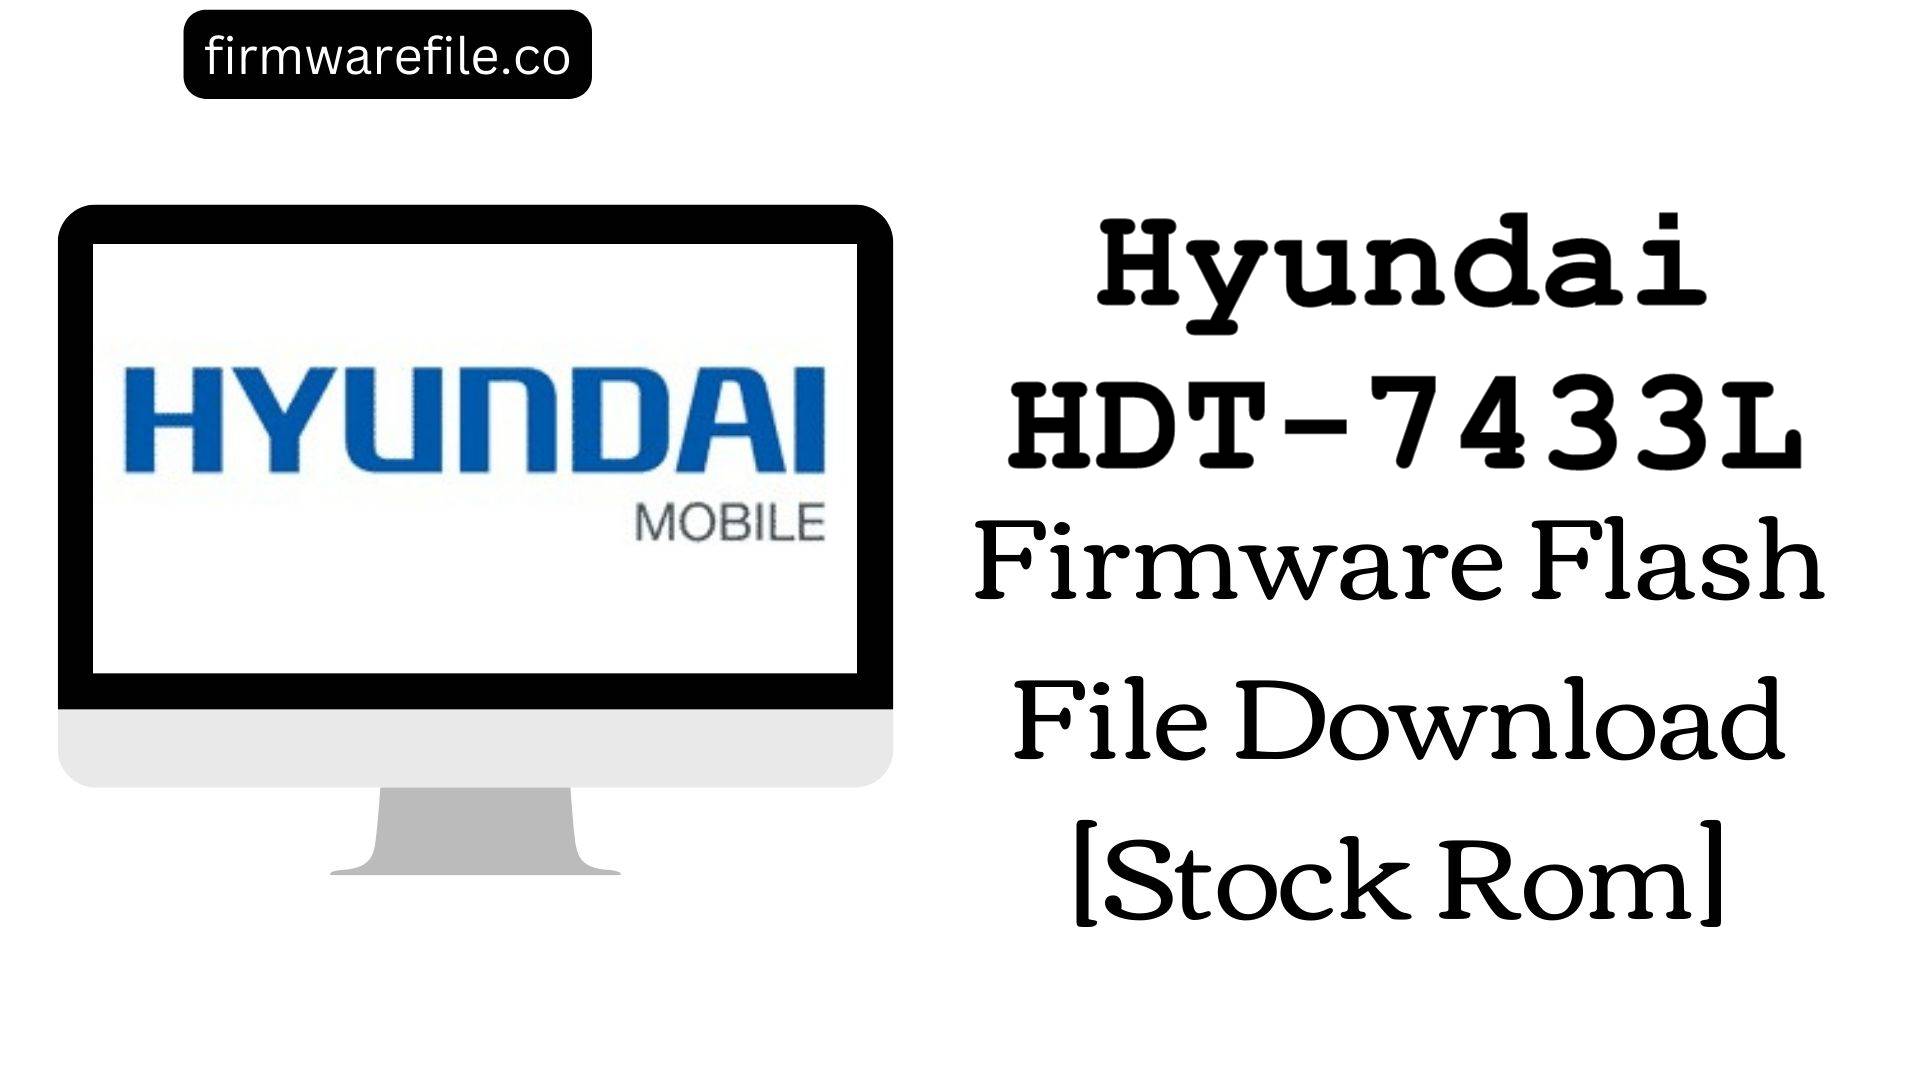 Hyundai HDT 7433L